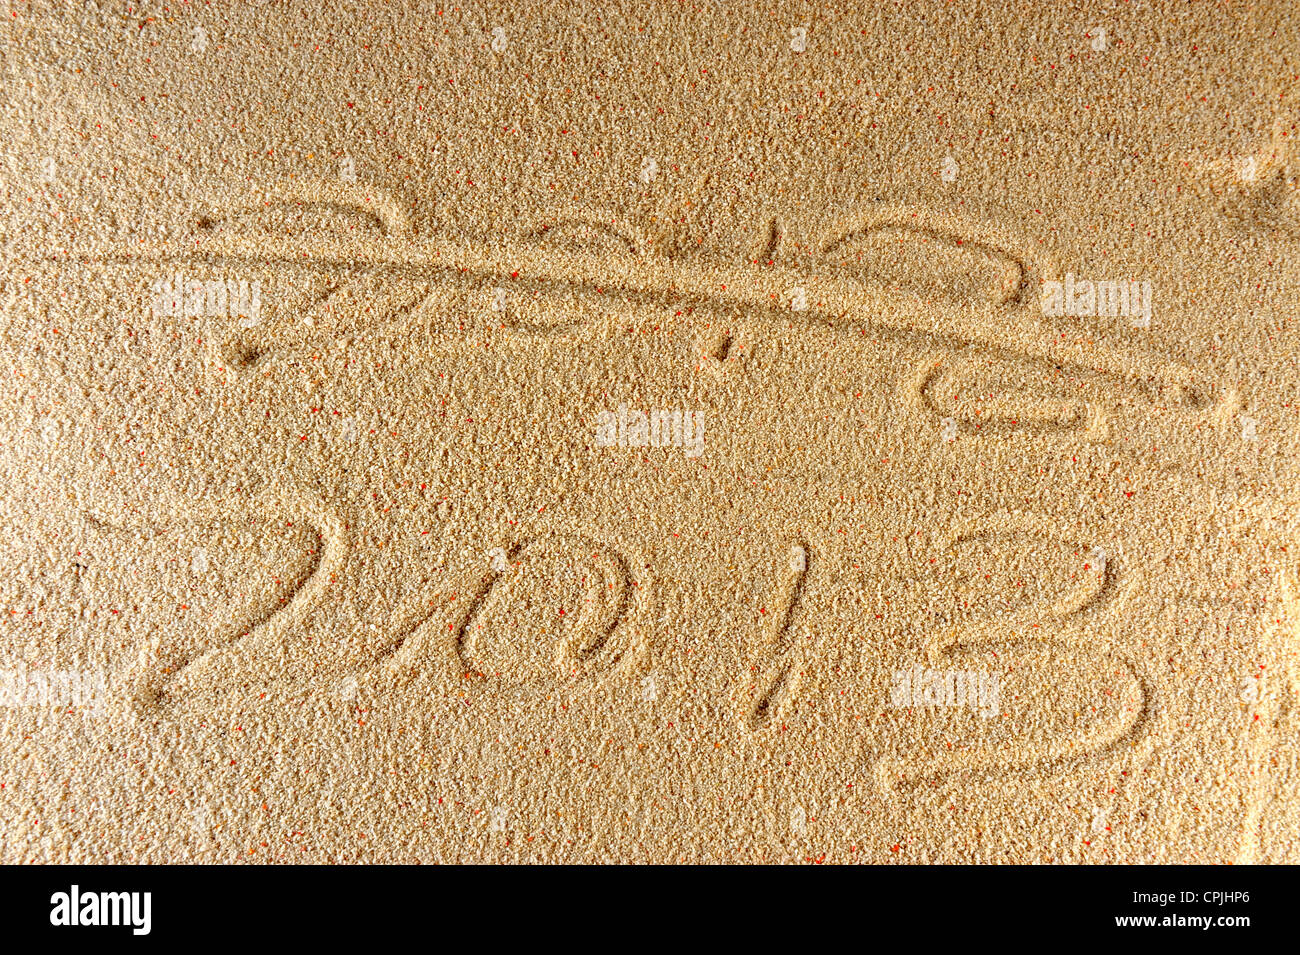 2012 und 2013 geschrieben auf dem Sand mit einem Kreuz durch Reihe 2012 d.h. 2013 neues Jahr steht vor der Tür, Stockfoto